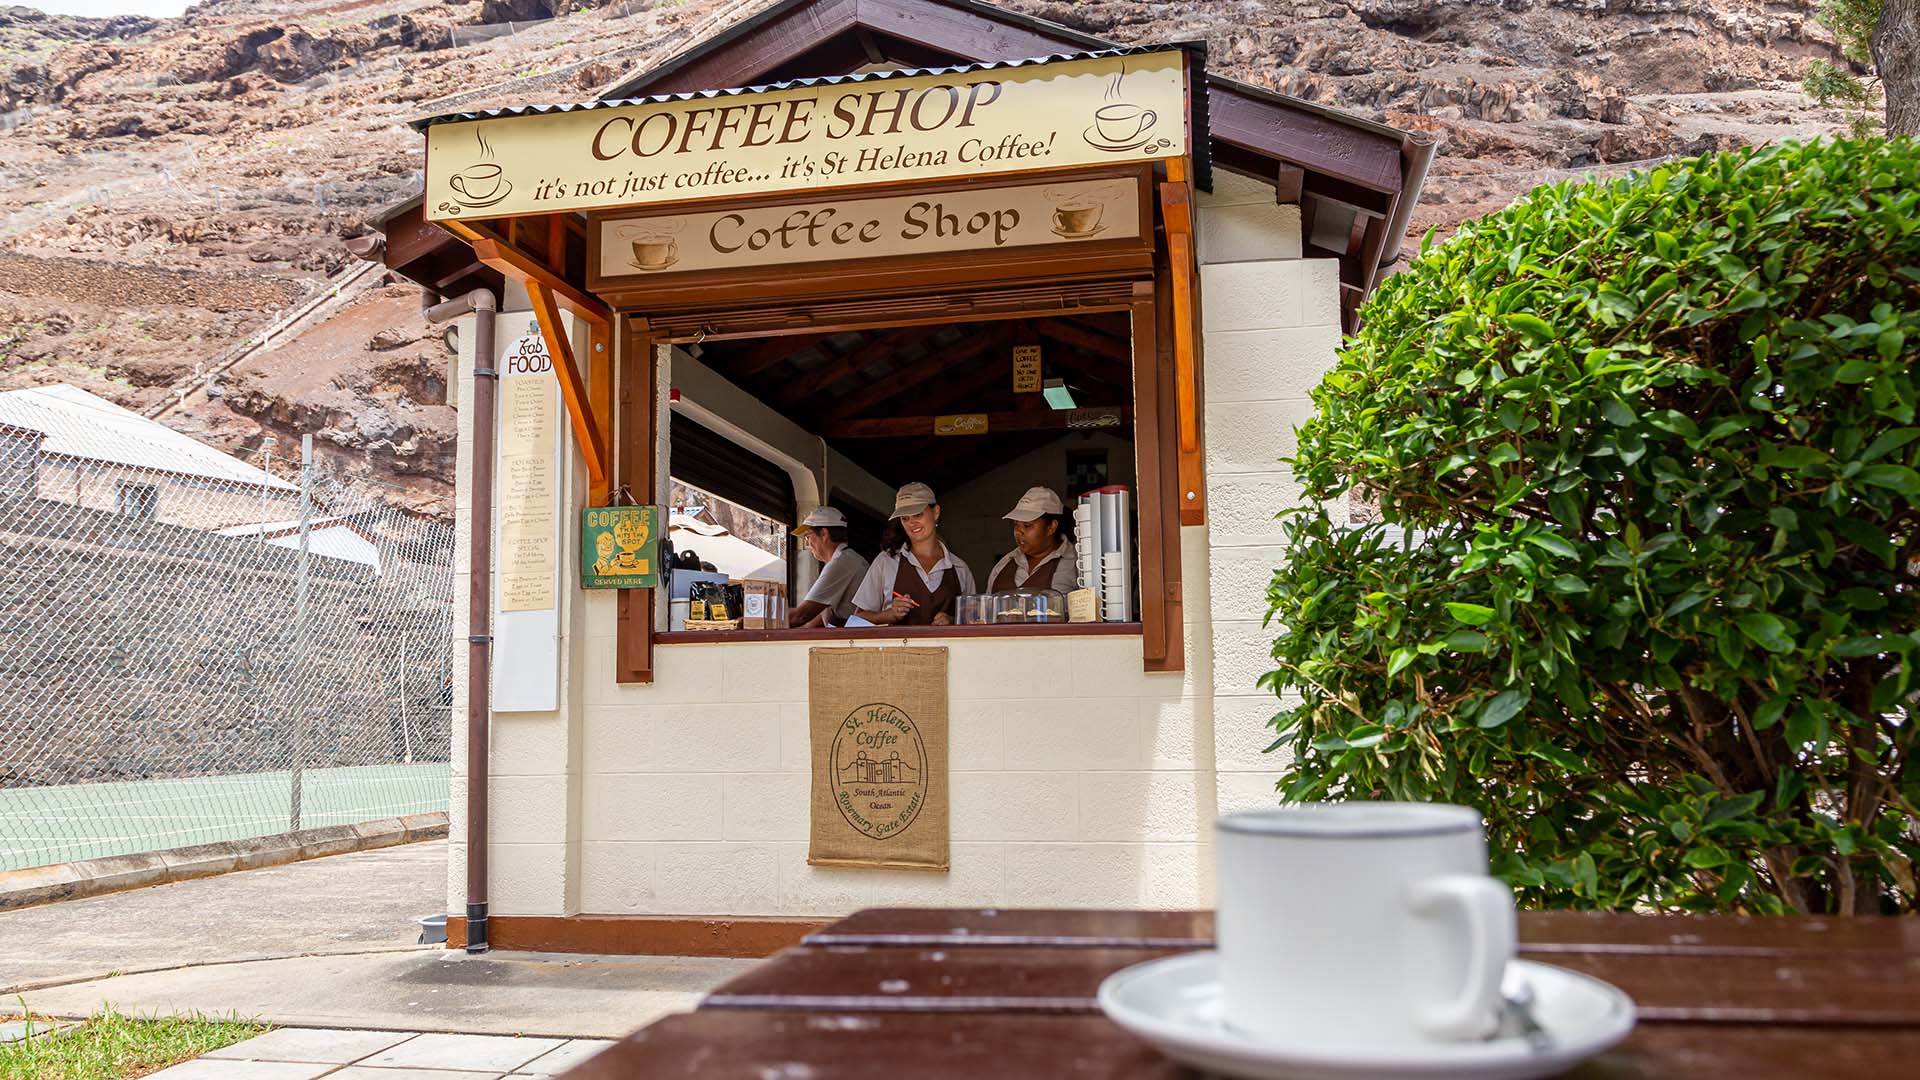 St Helena Coffee Shop